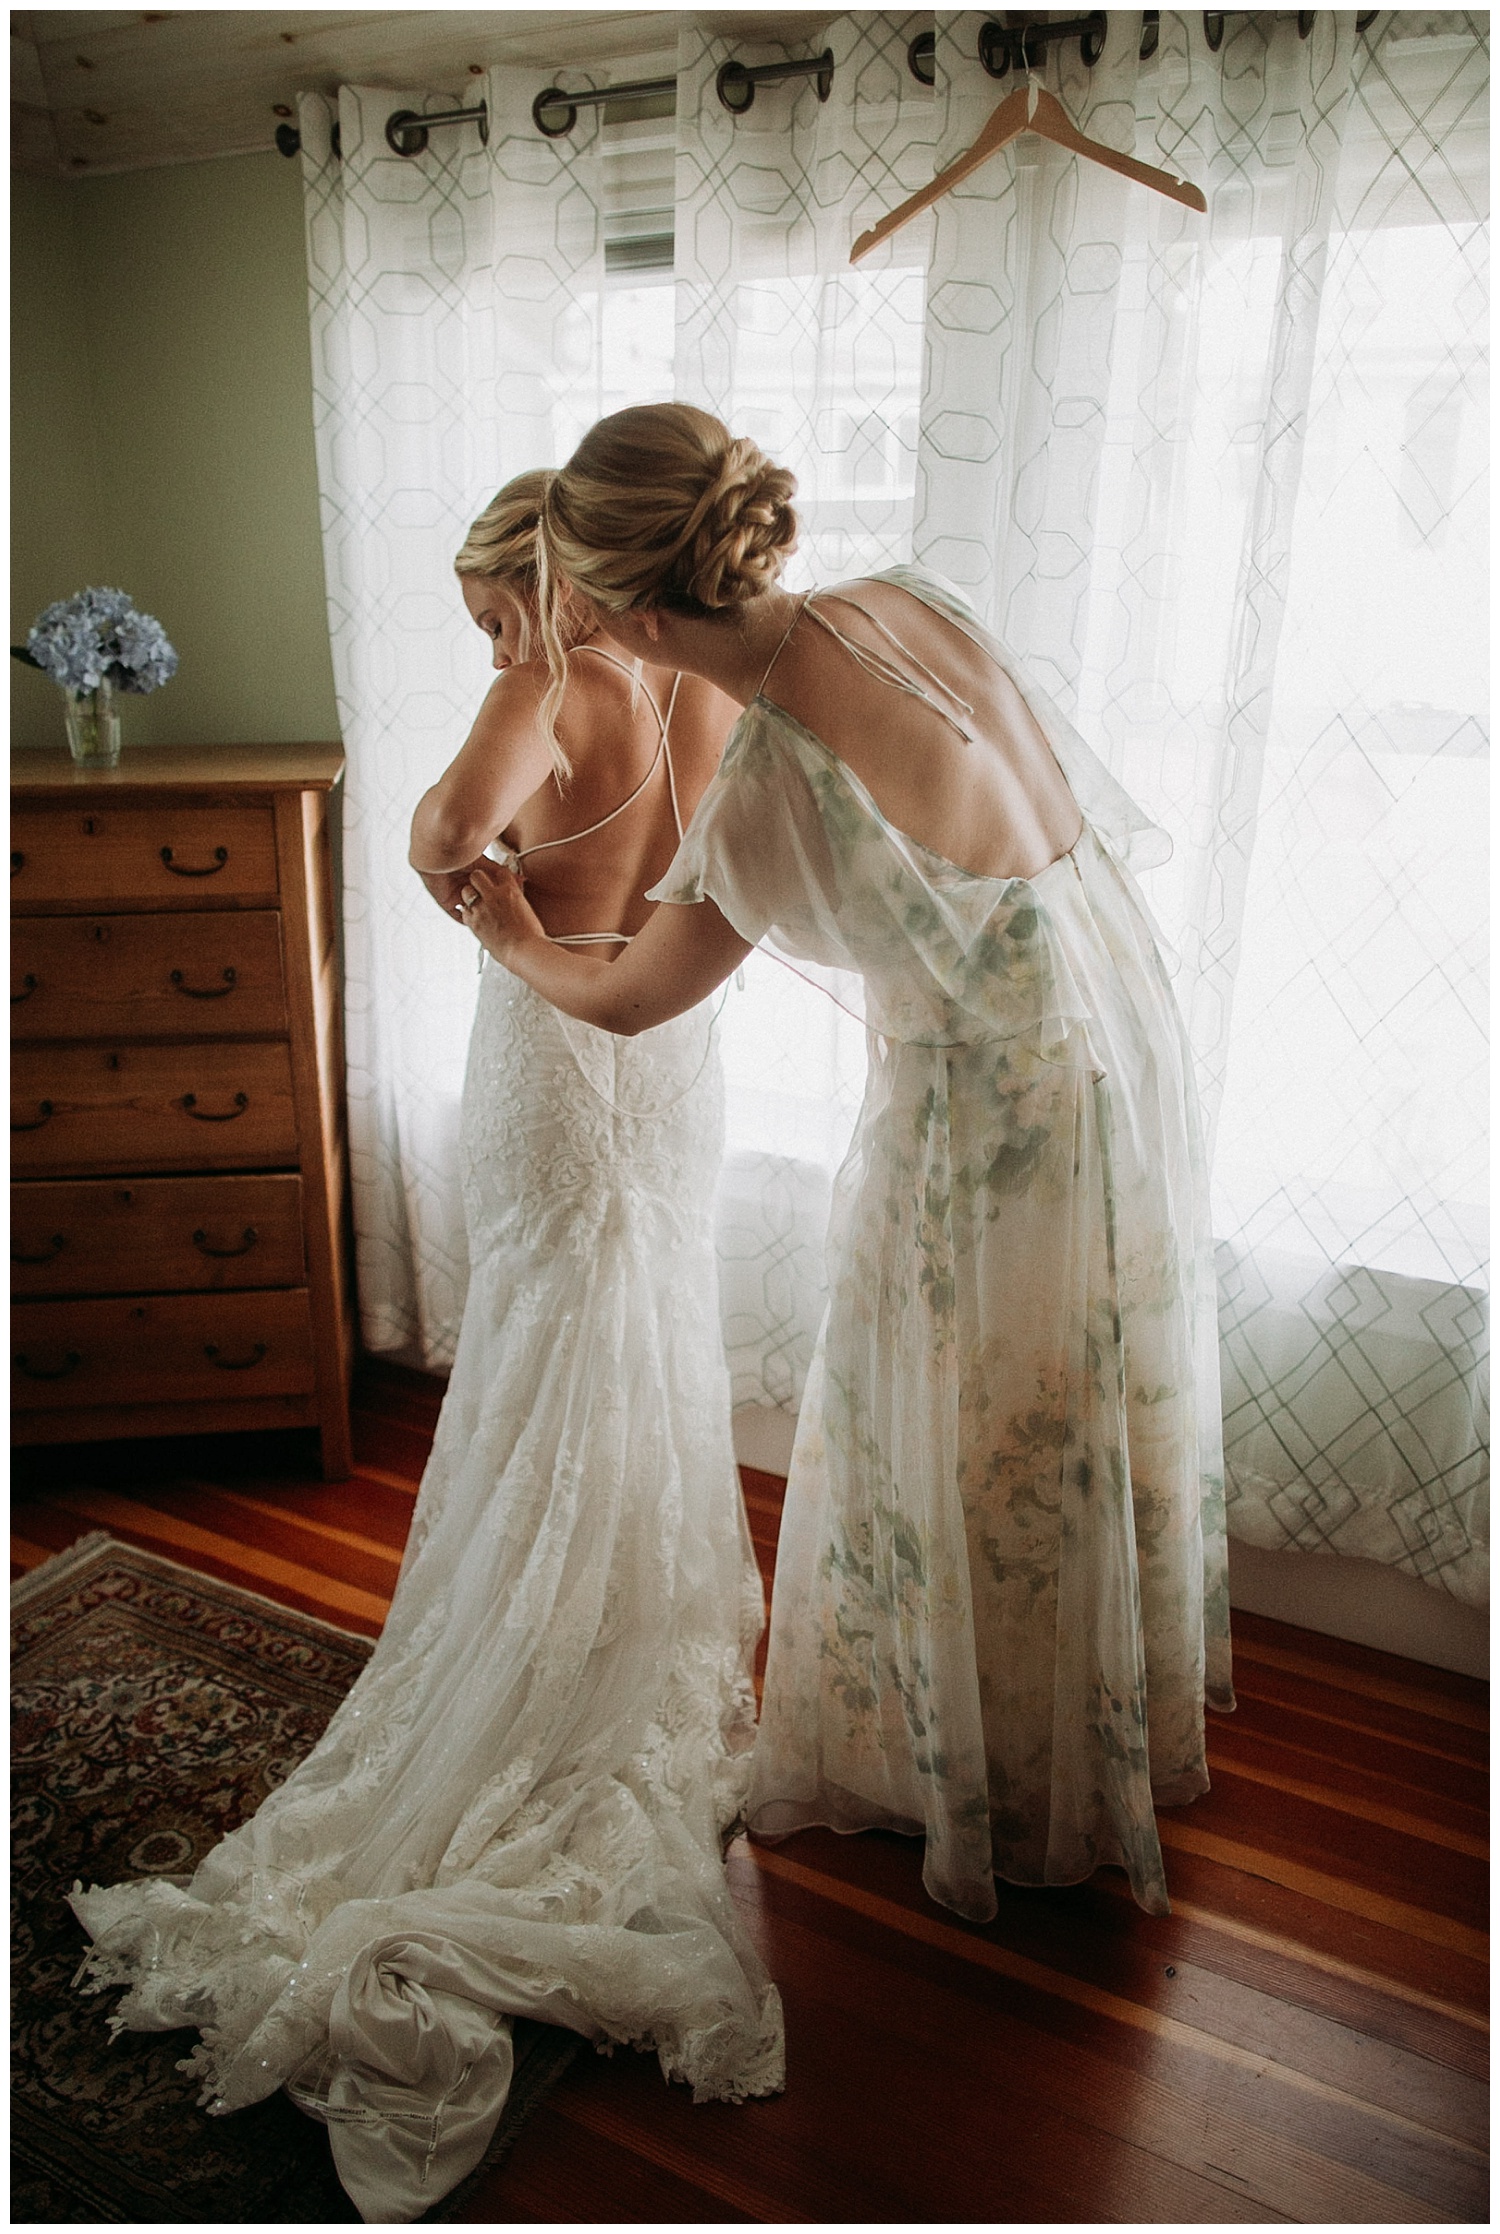 a bridesmaid helps a bride get ready